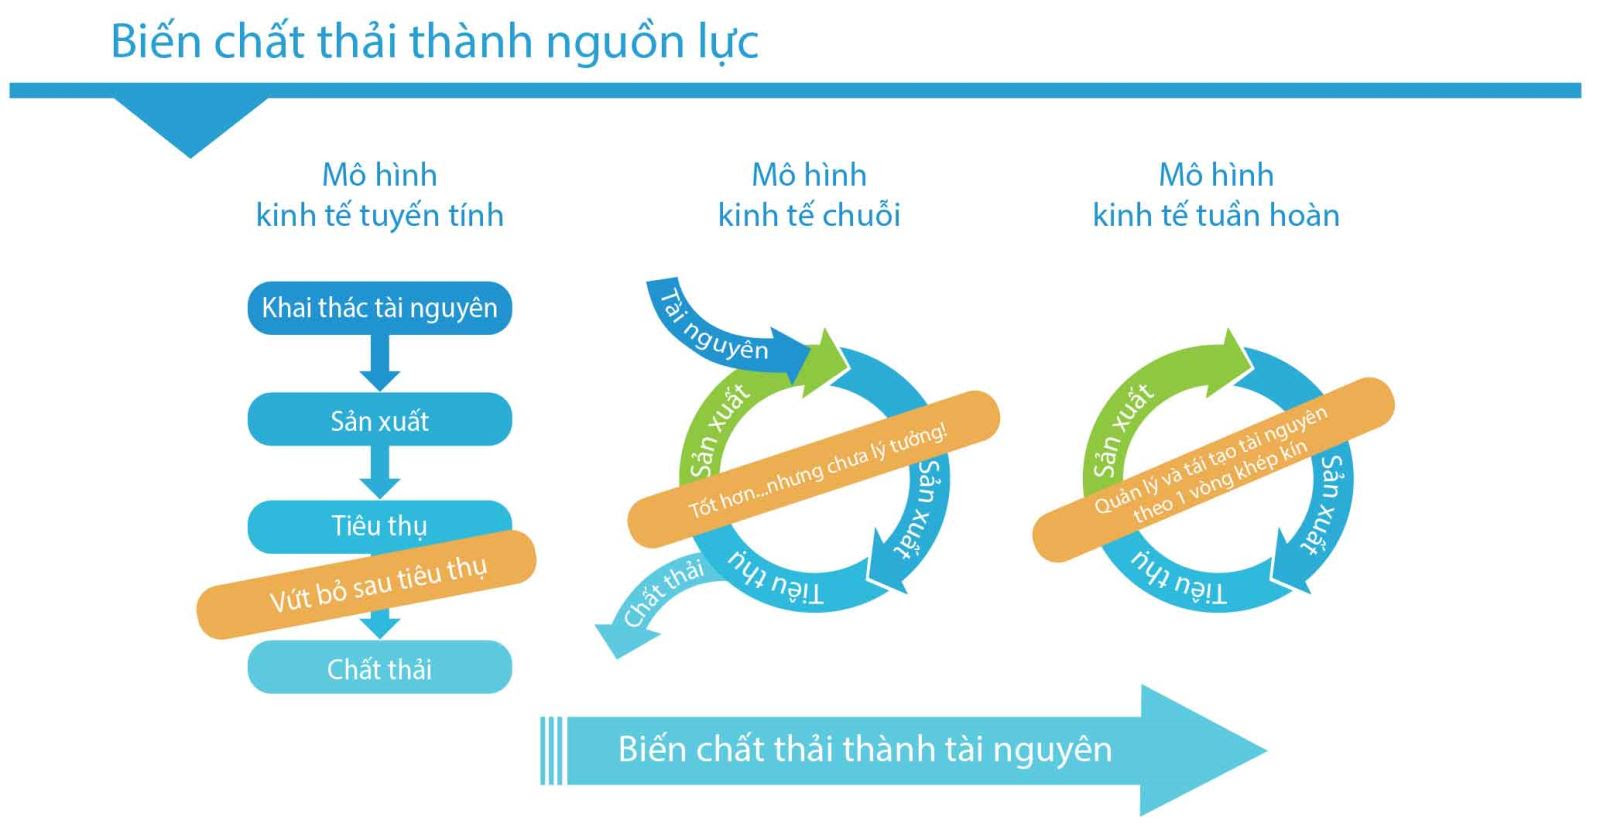 Phát triển kinh tế tuần hoàn ở Việt Nam  Thư viện Đại học An Giang